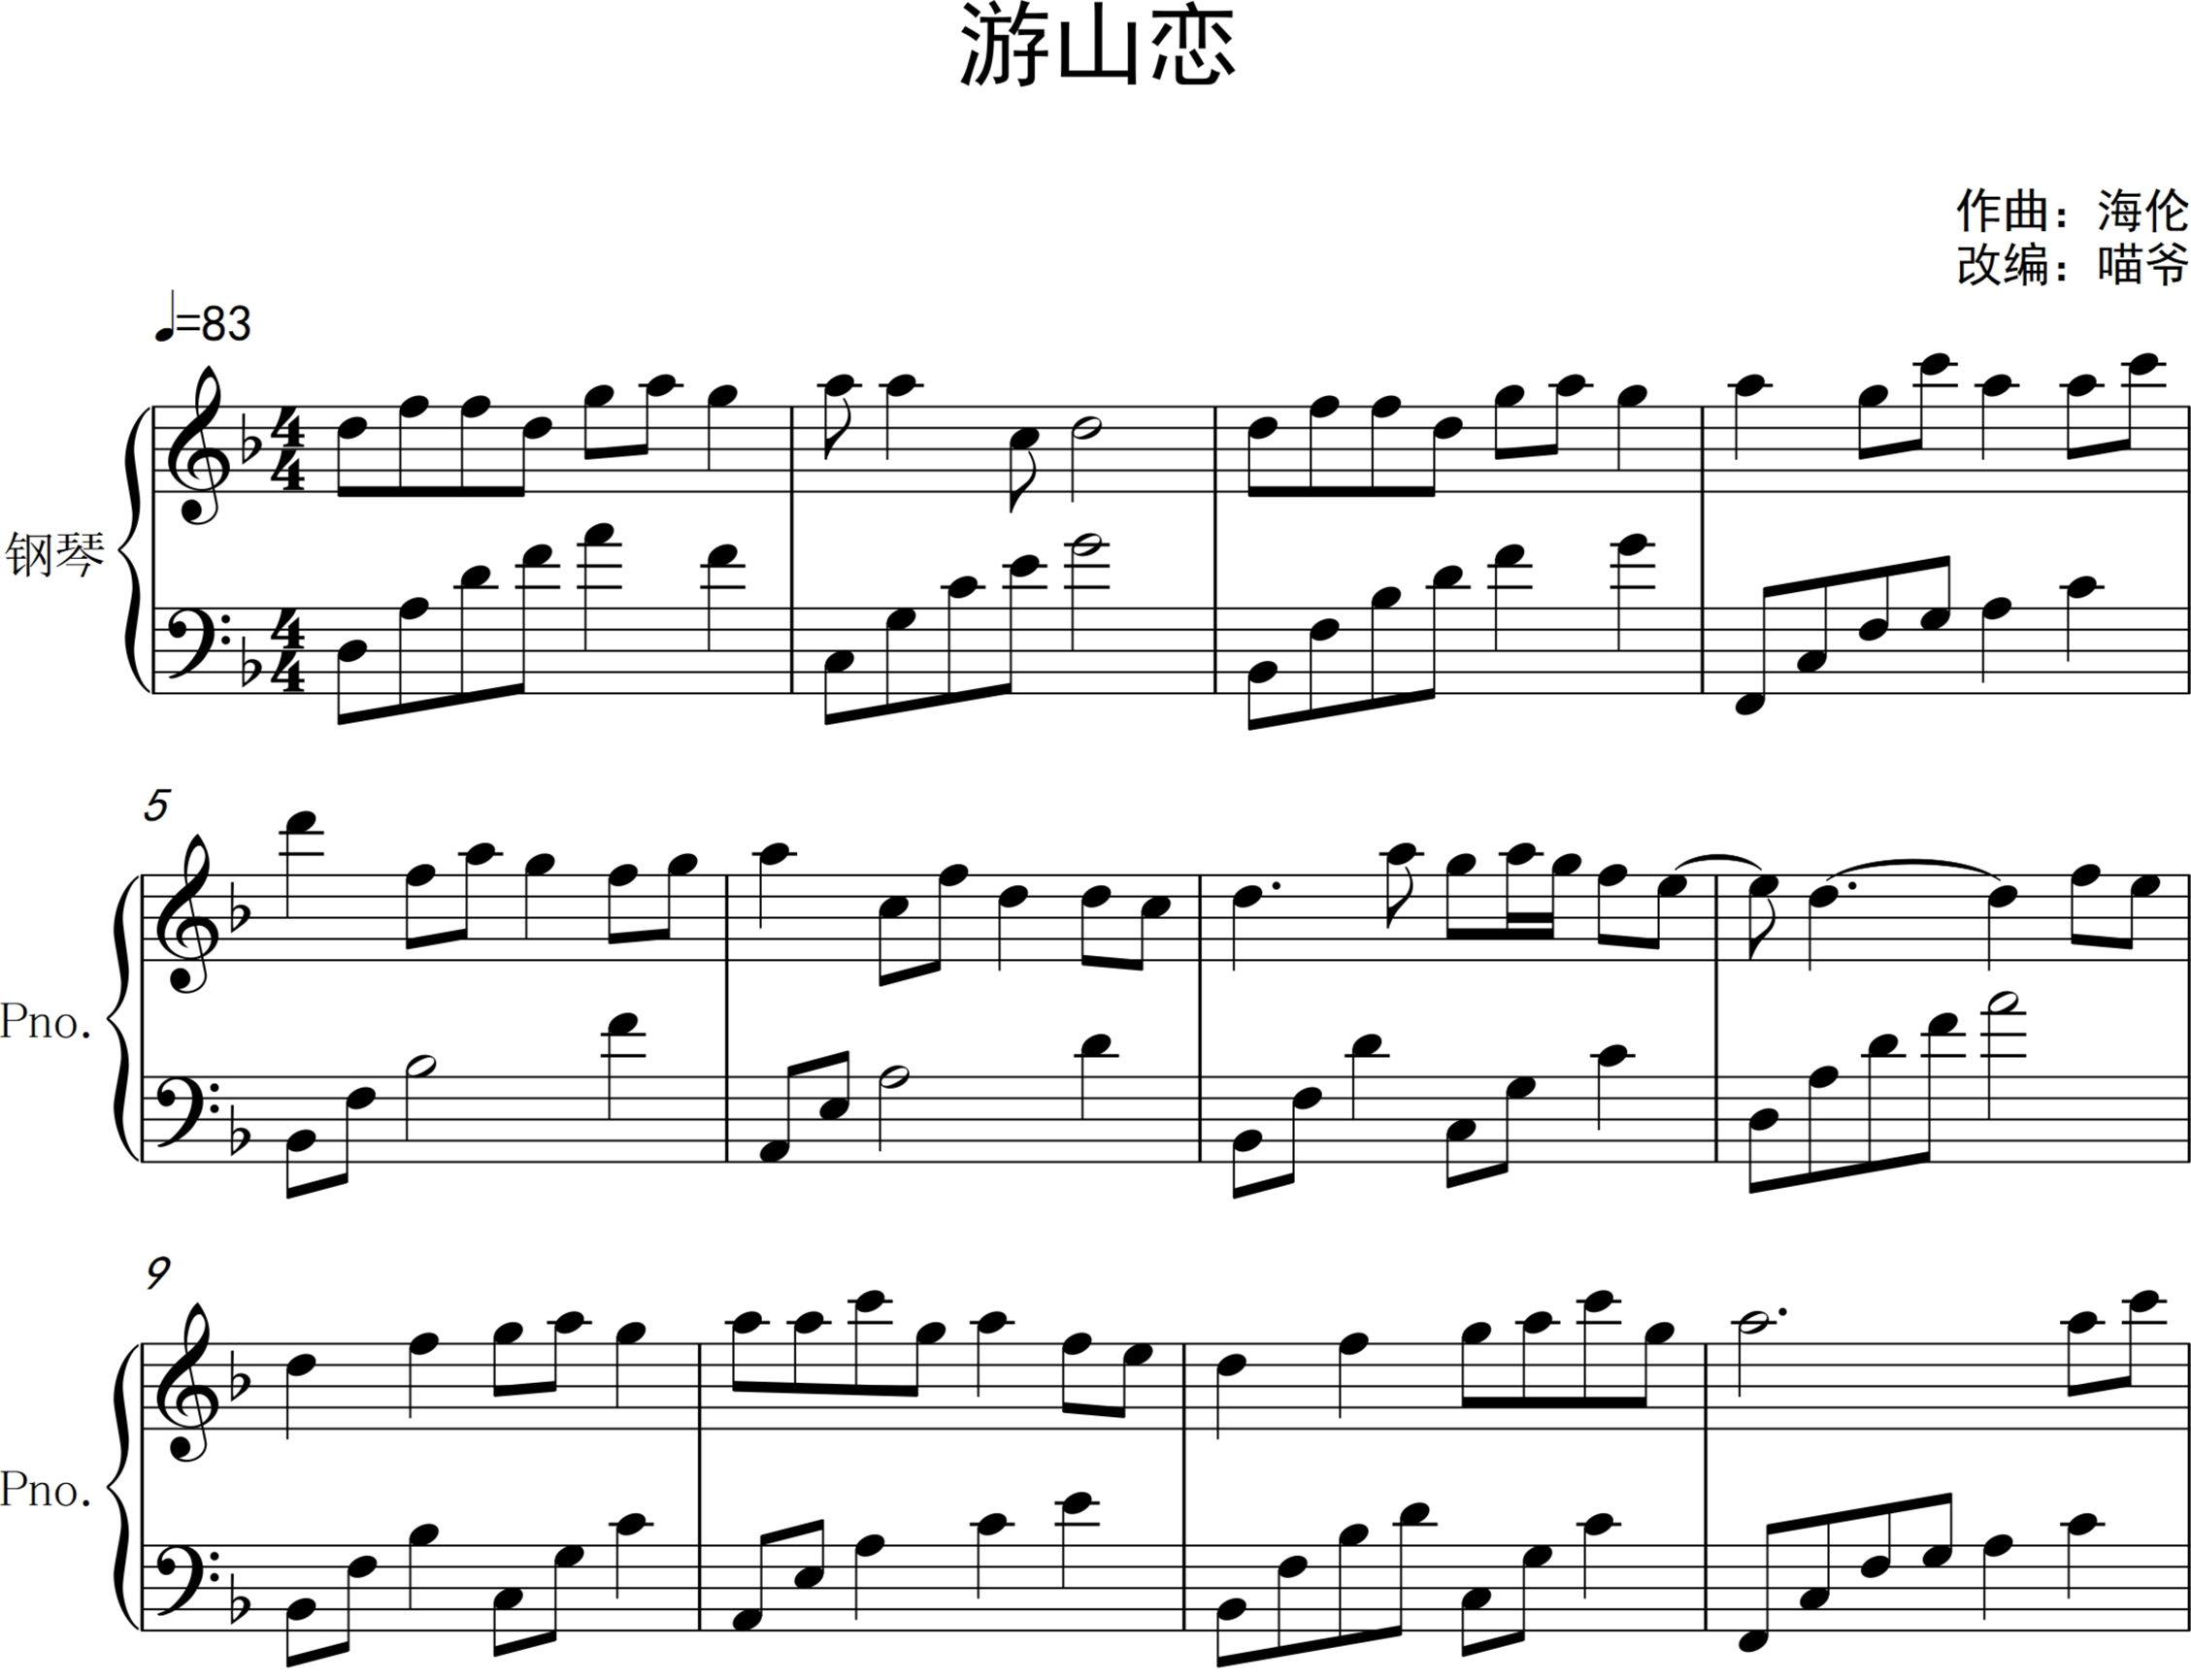 琴艺谱首页 vip钢琴谱 游山恋钢琴谱 海伦演唱0:0